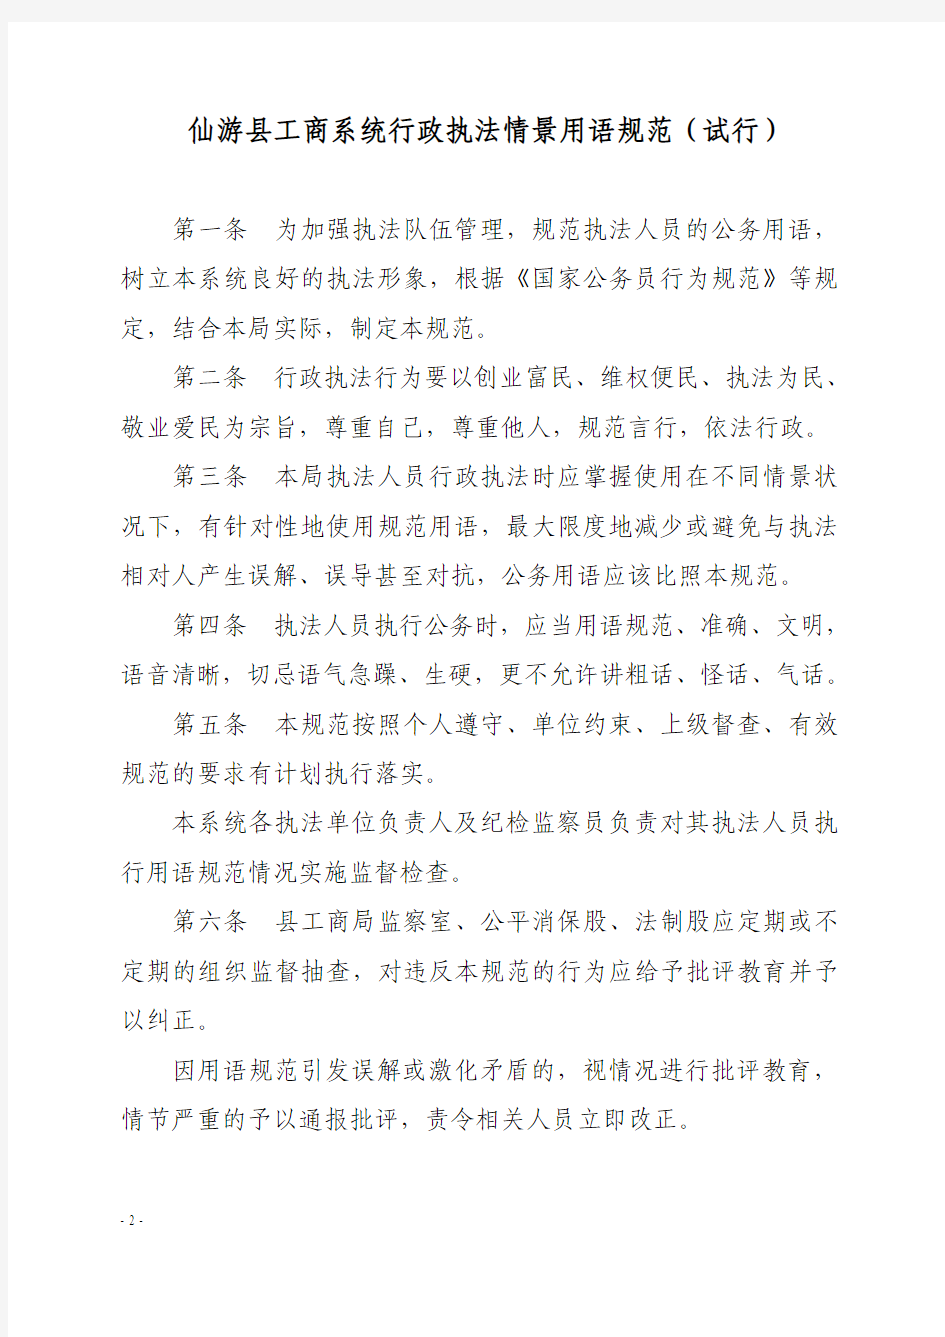 仙游县工商局关于印发仙游县工商系统行政执法情景用语规范(试行)的通知